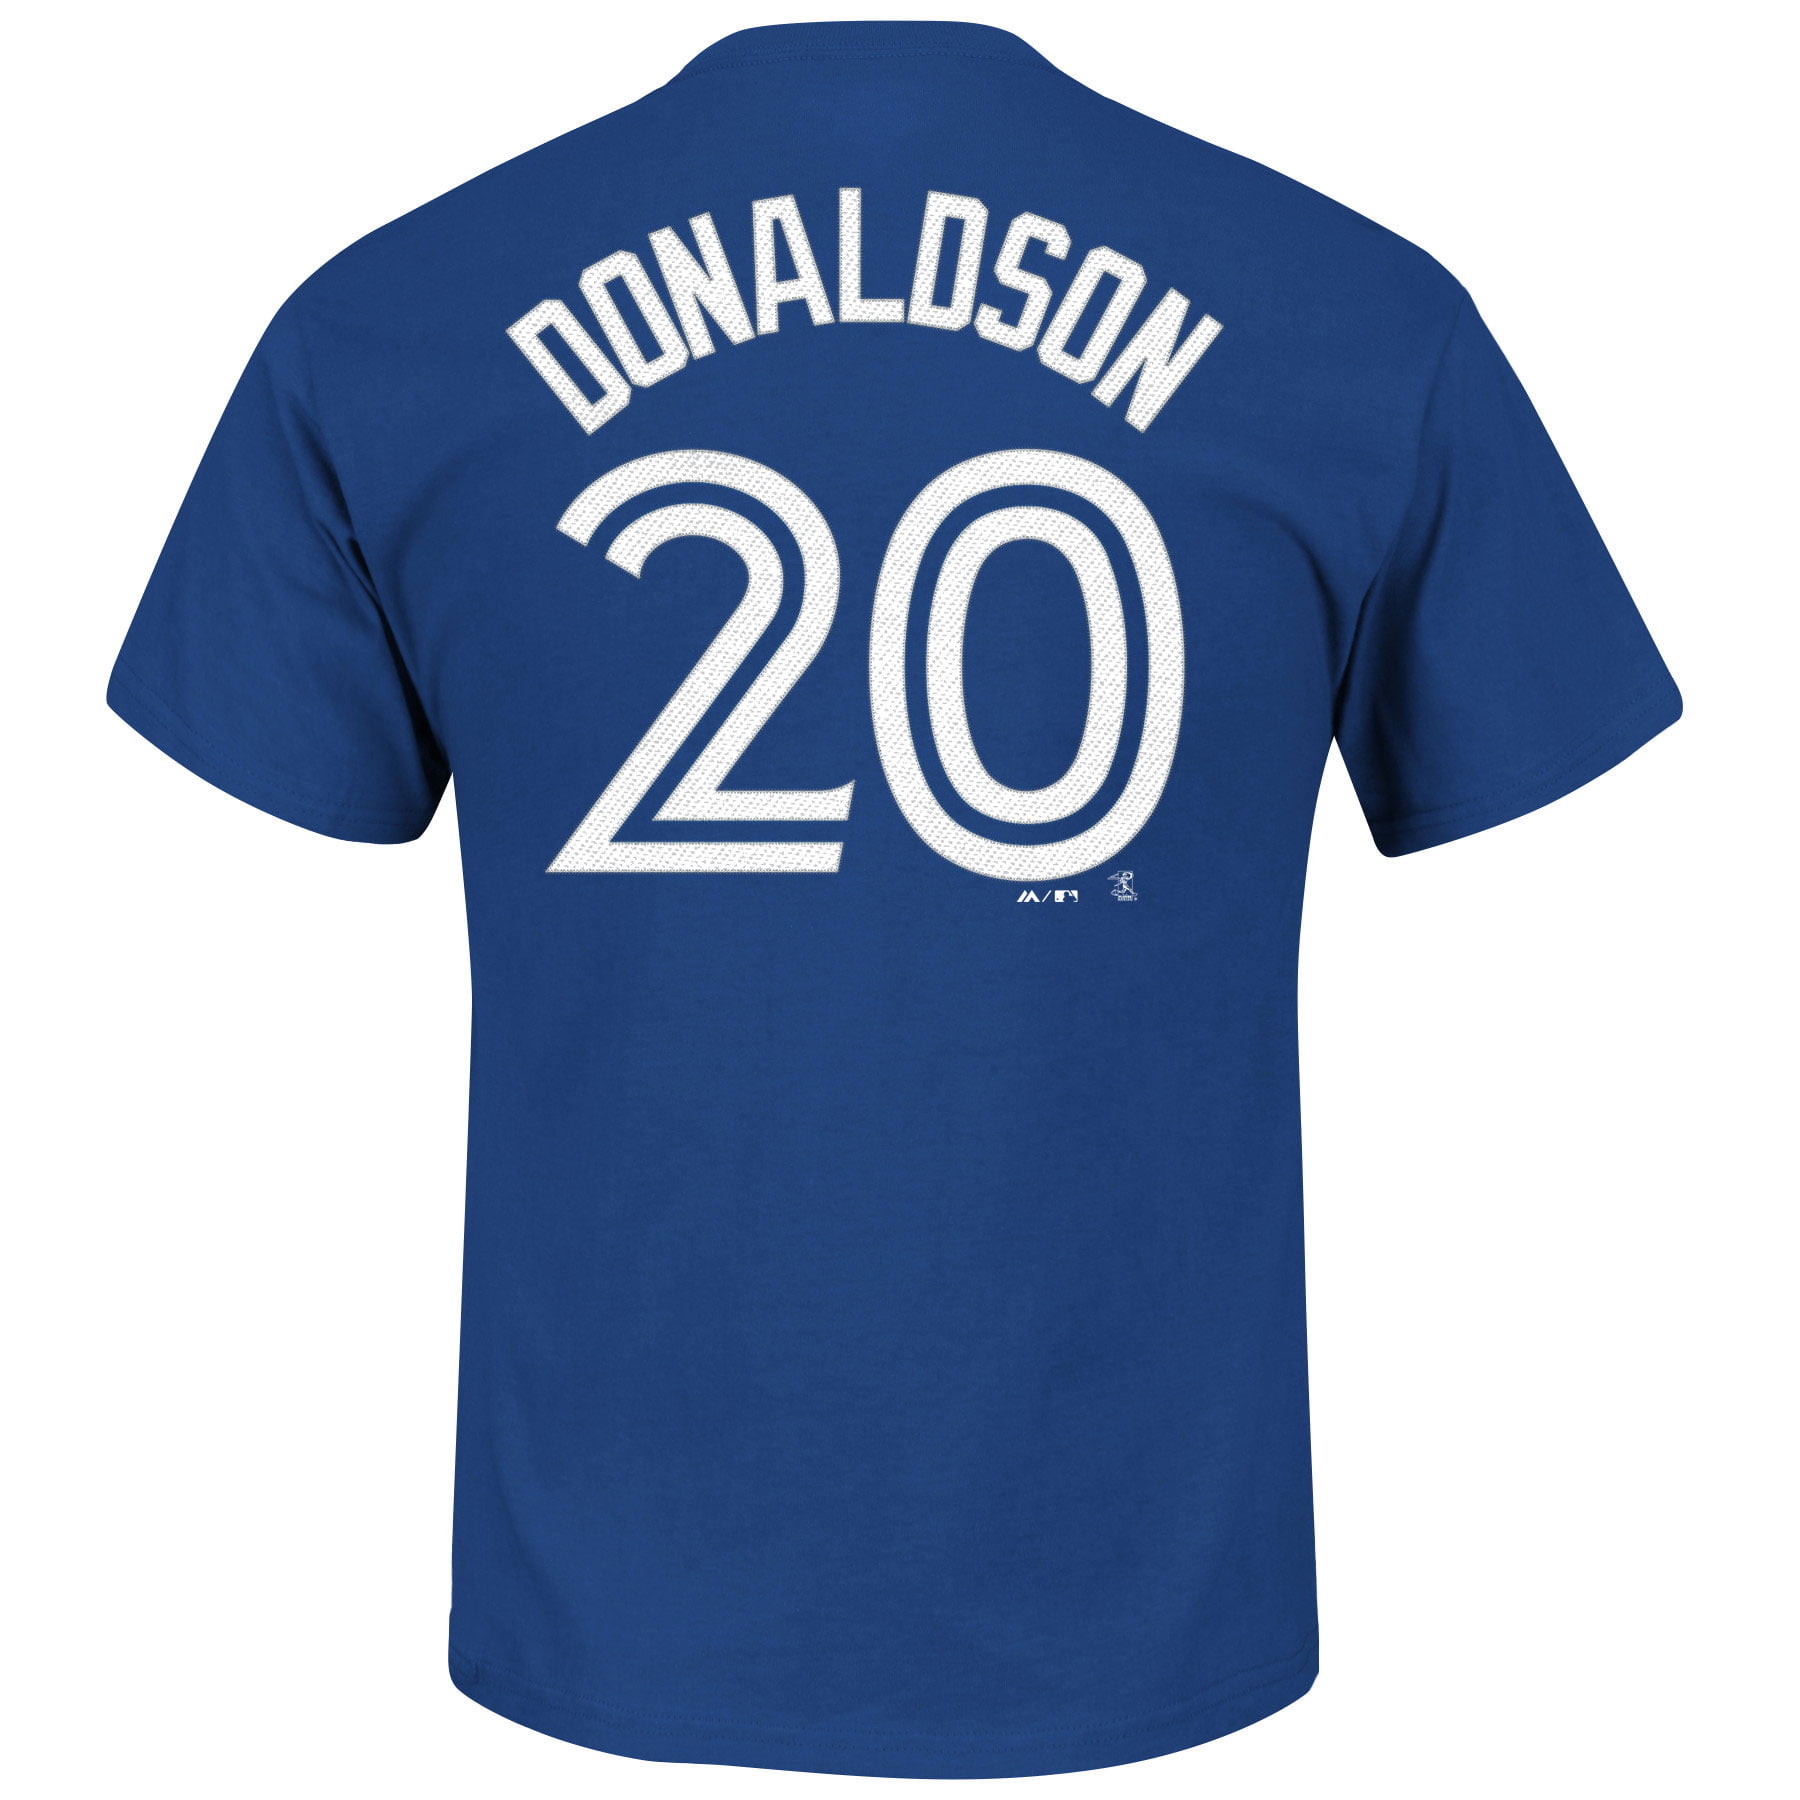 josh donaldson jersey shirt